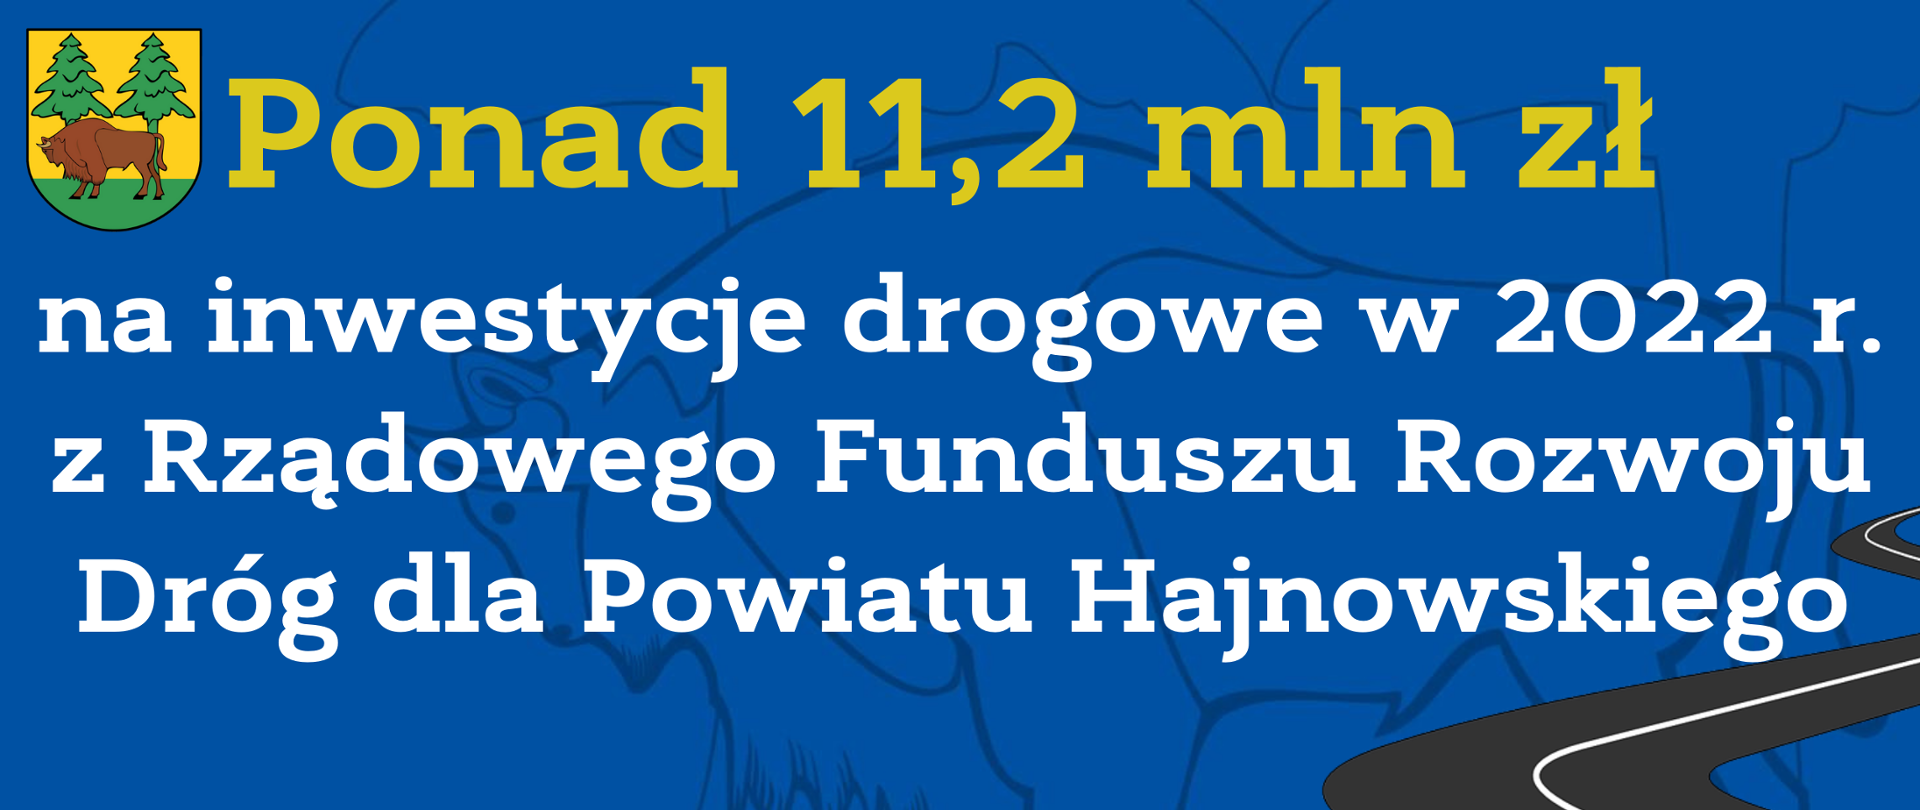 Ponad 11,2 mln zł na inwestycje drogowe w 2022 r. z Rządowego Funduszu Rozwoju Dróg dla Powiatu Hajnowskiego